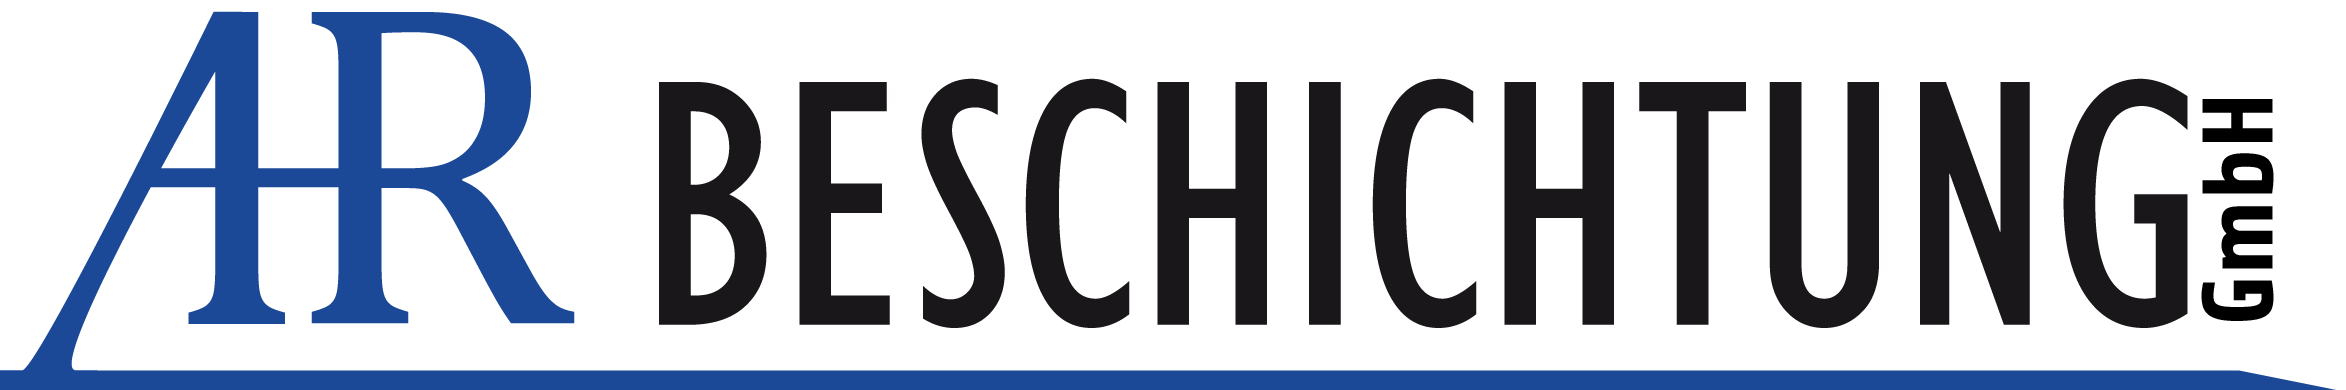 AR Beschichtung GmbH Logo